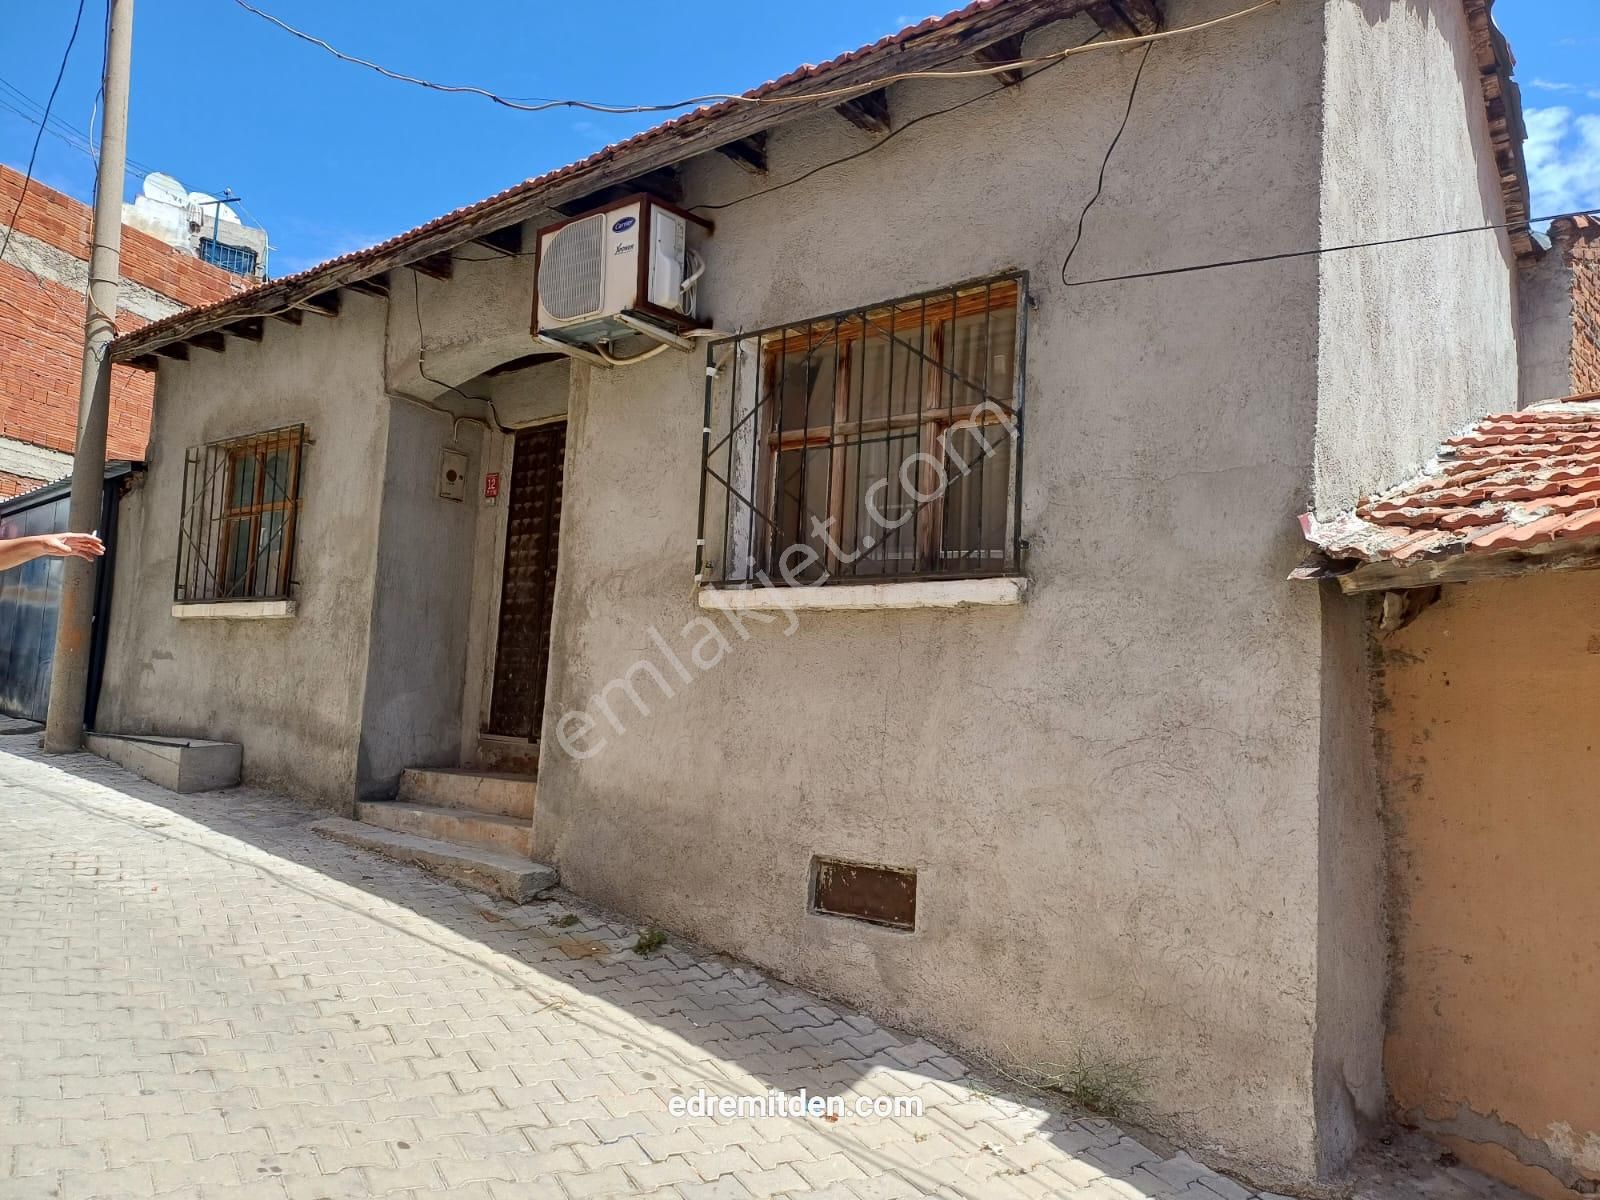 Edremit Hekimzade Satılık Müstakil Ev  Edremit Hekimzade Mahallesinde Satılık Müstakil ev